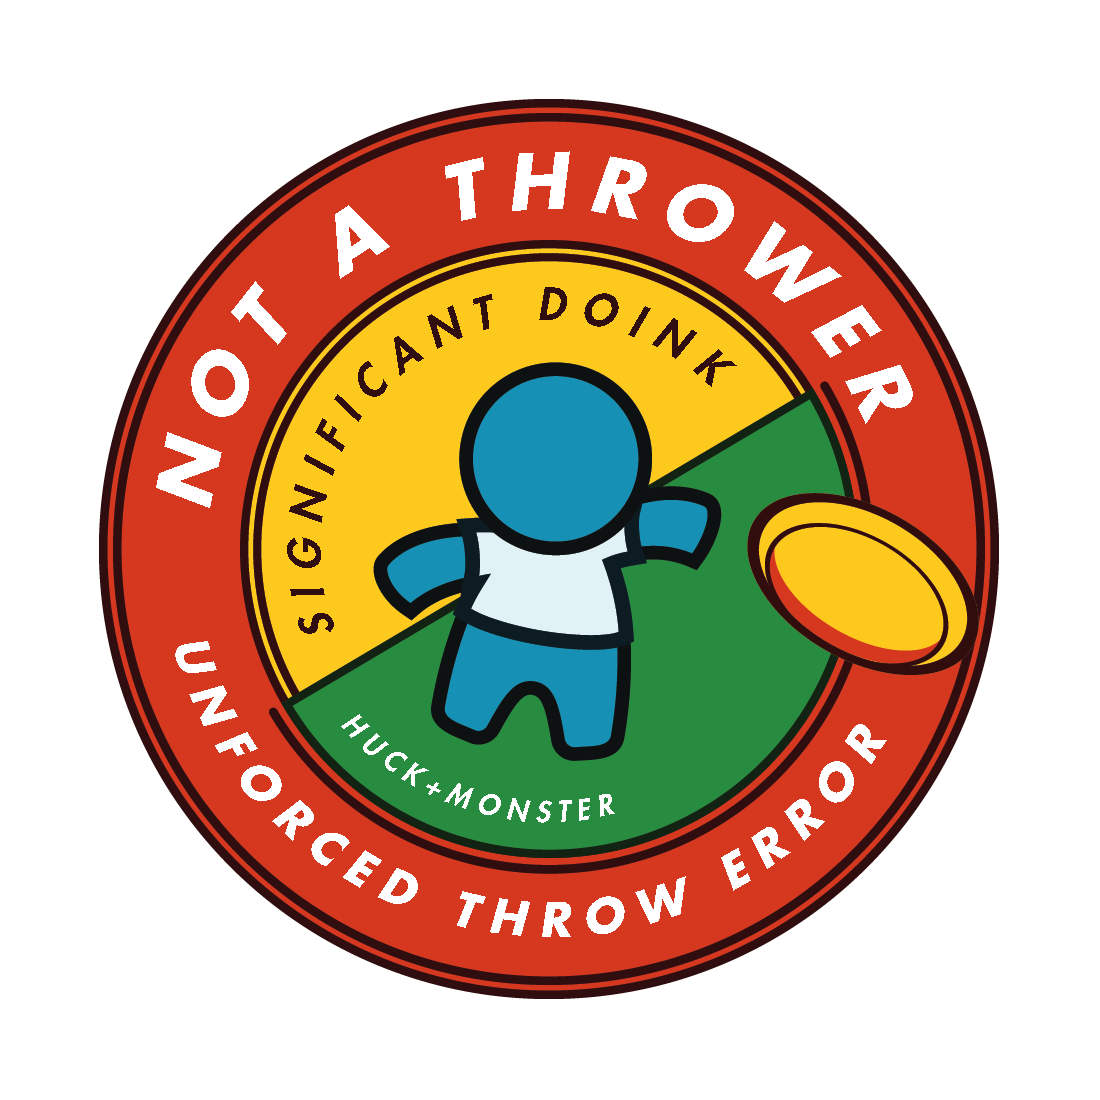 Not a Thrower